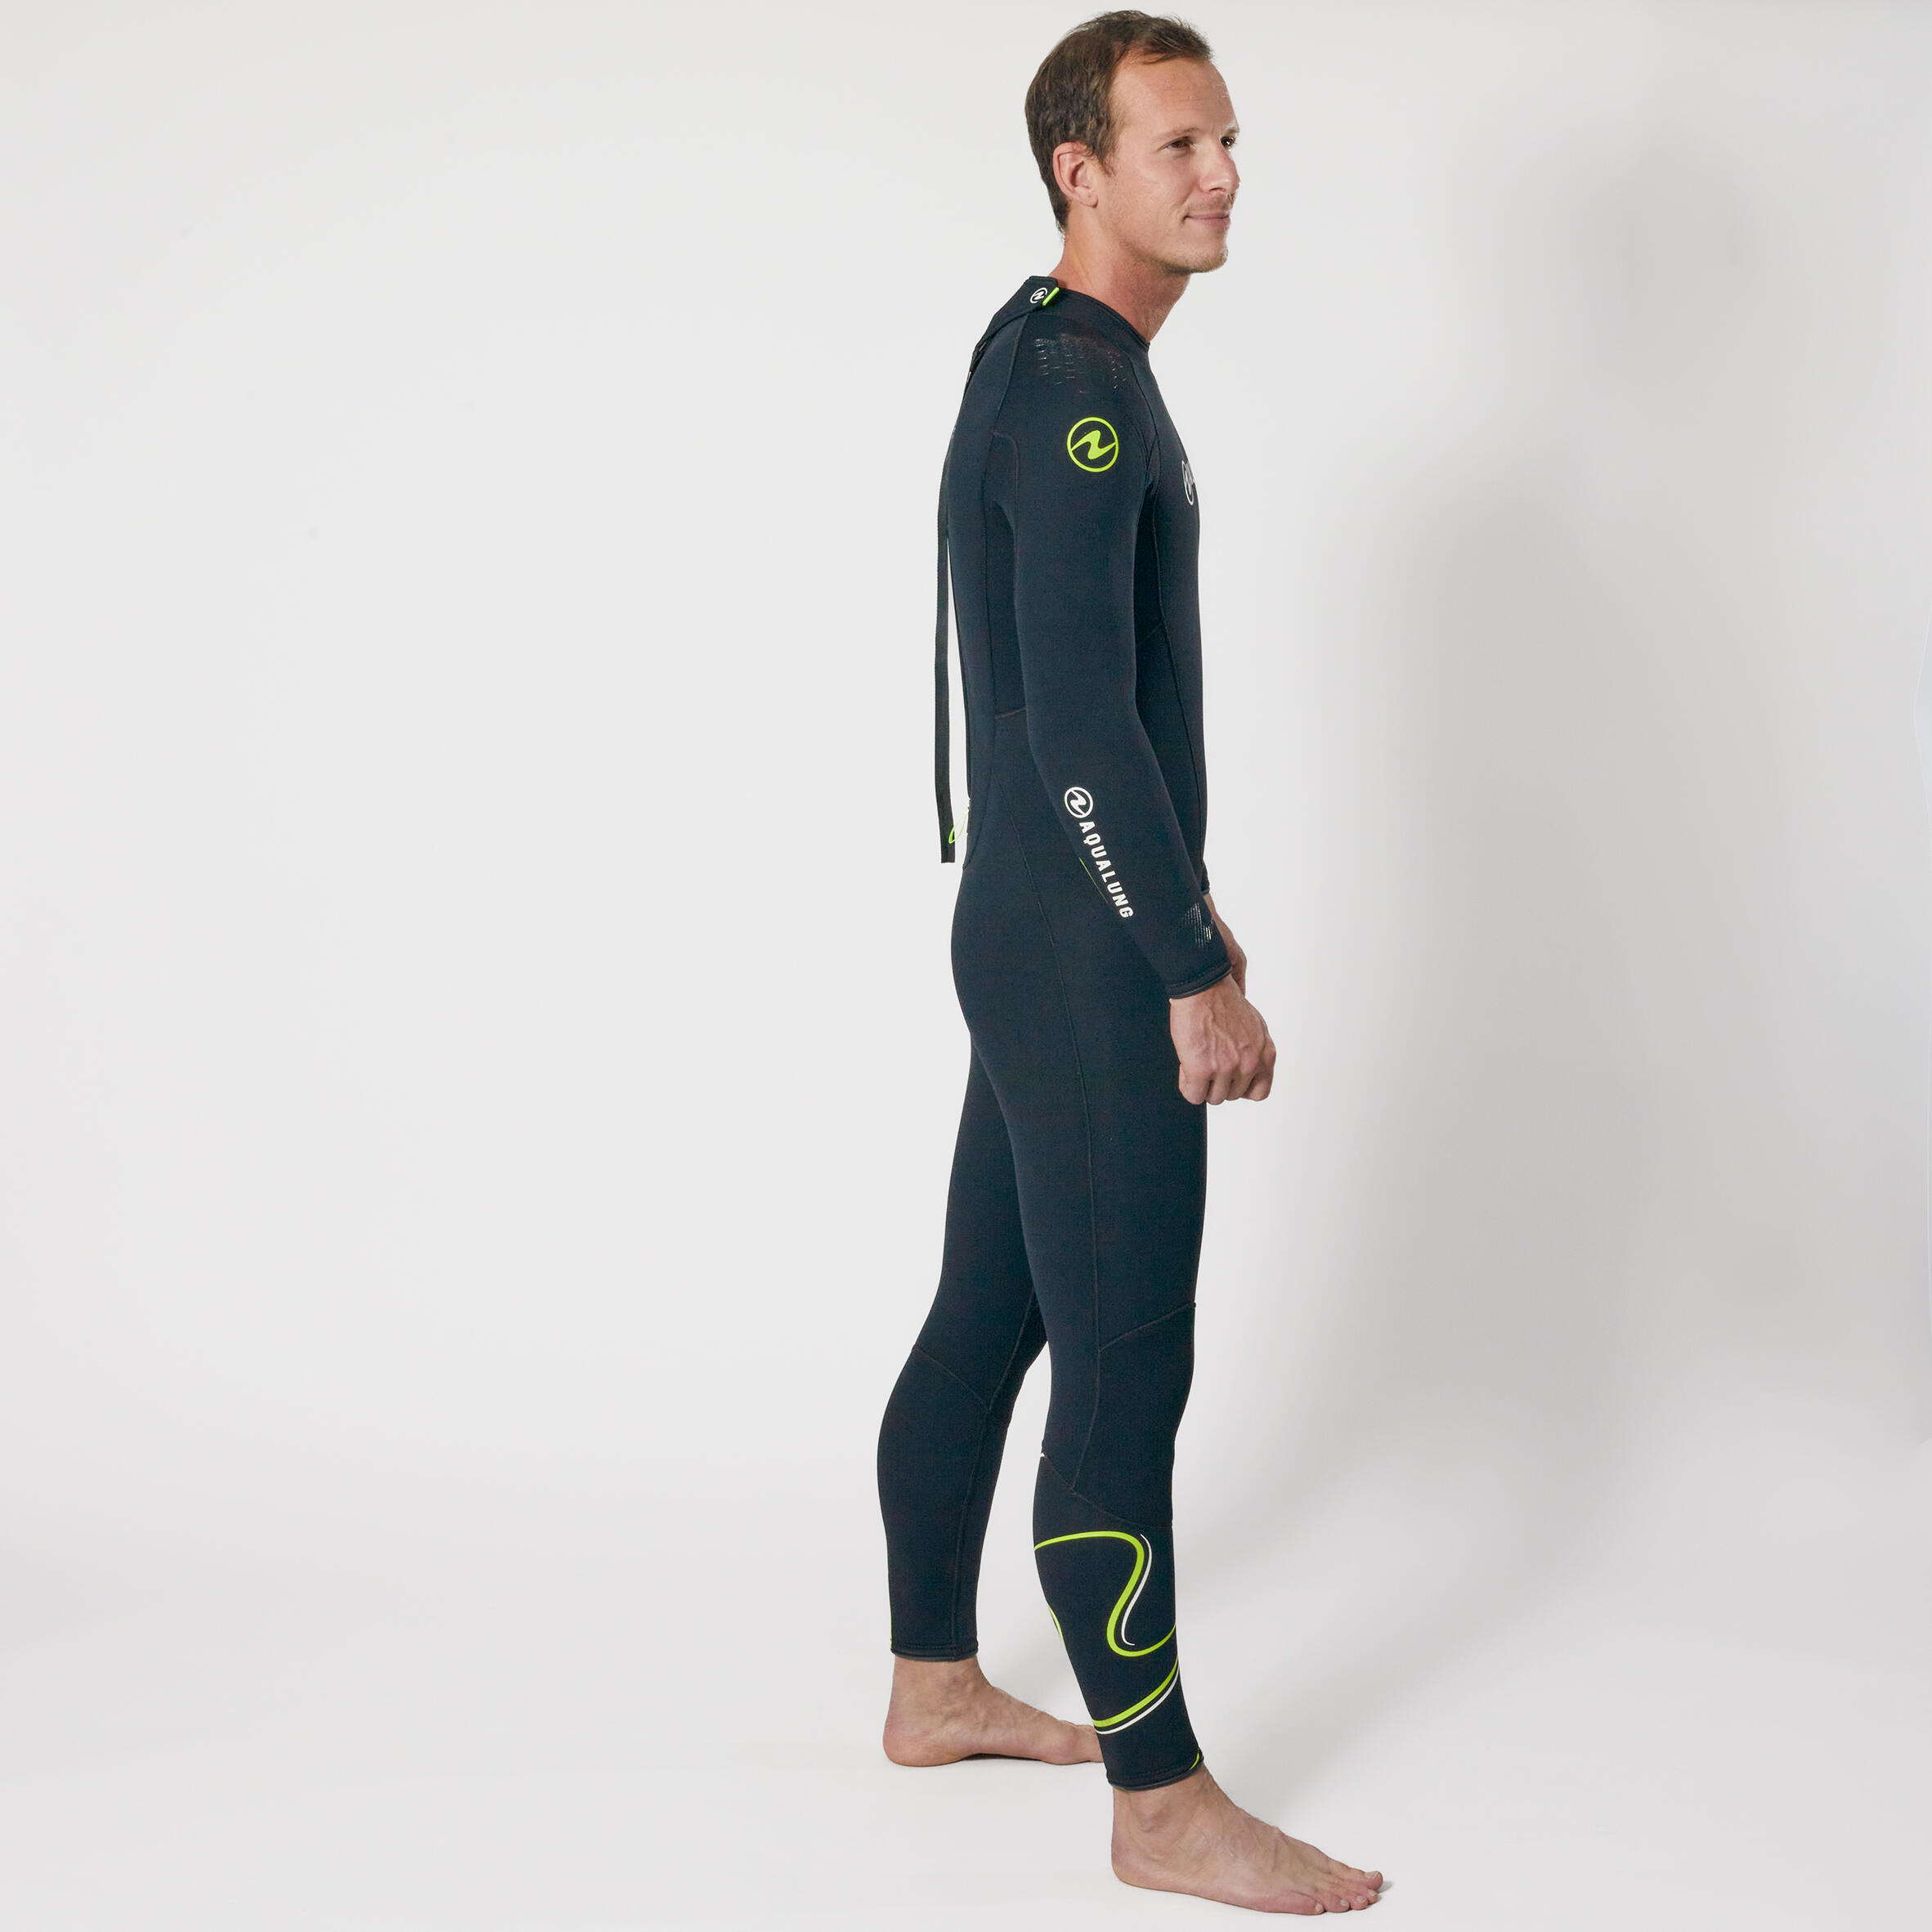 Men's diving wetsuit 5.5 mm neoprene Aqualung - WAVE Black/Yellow 2/8